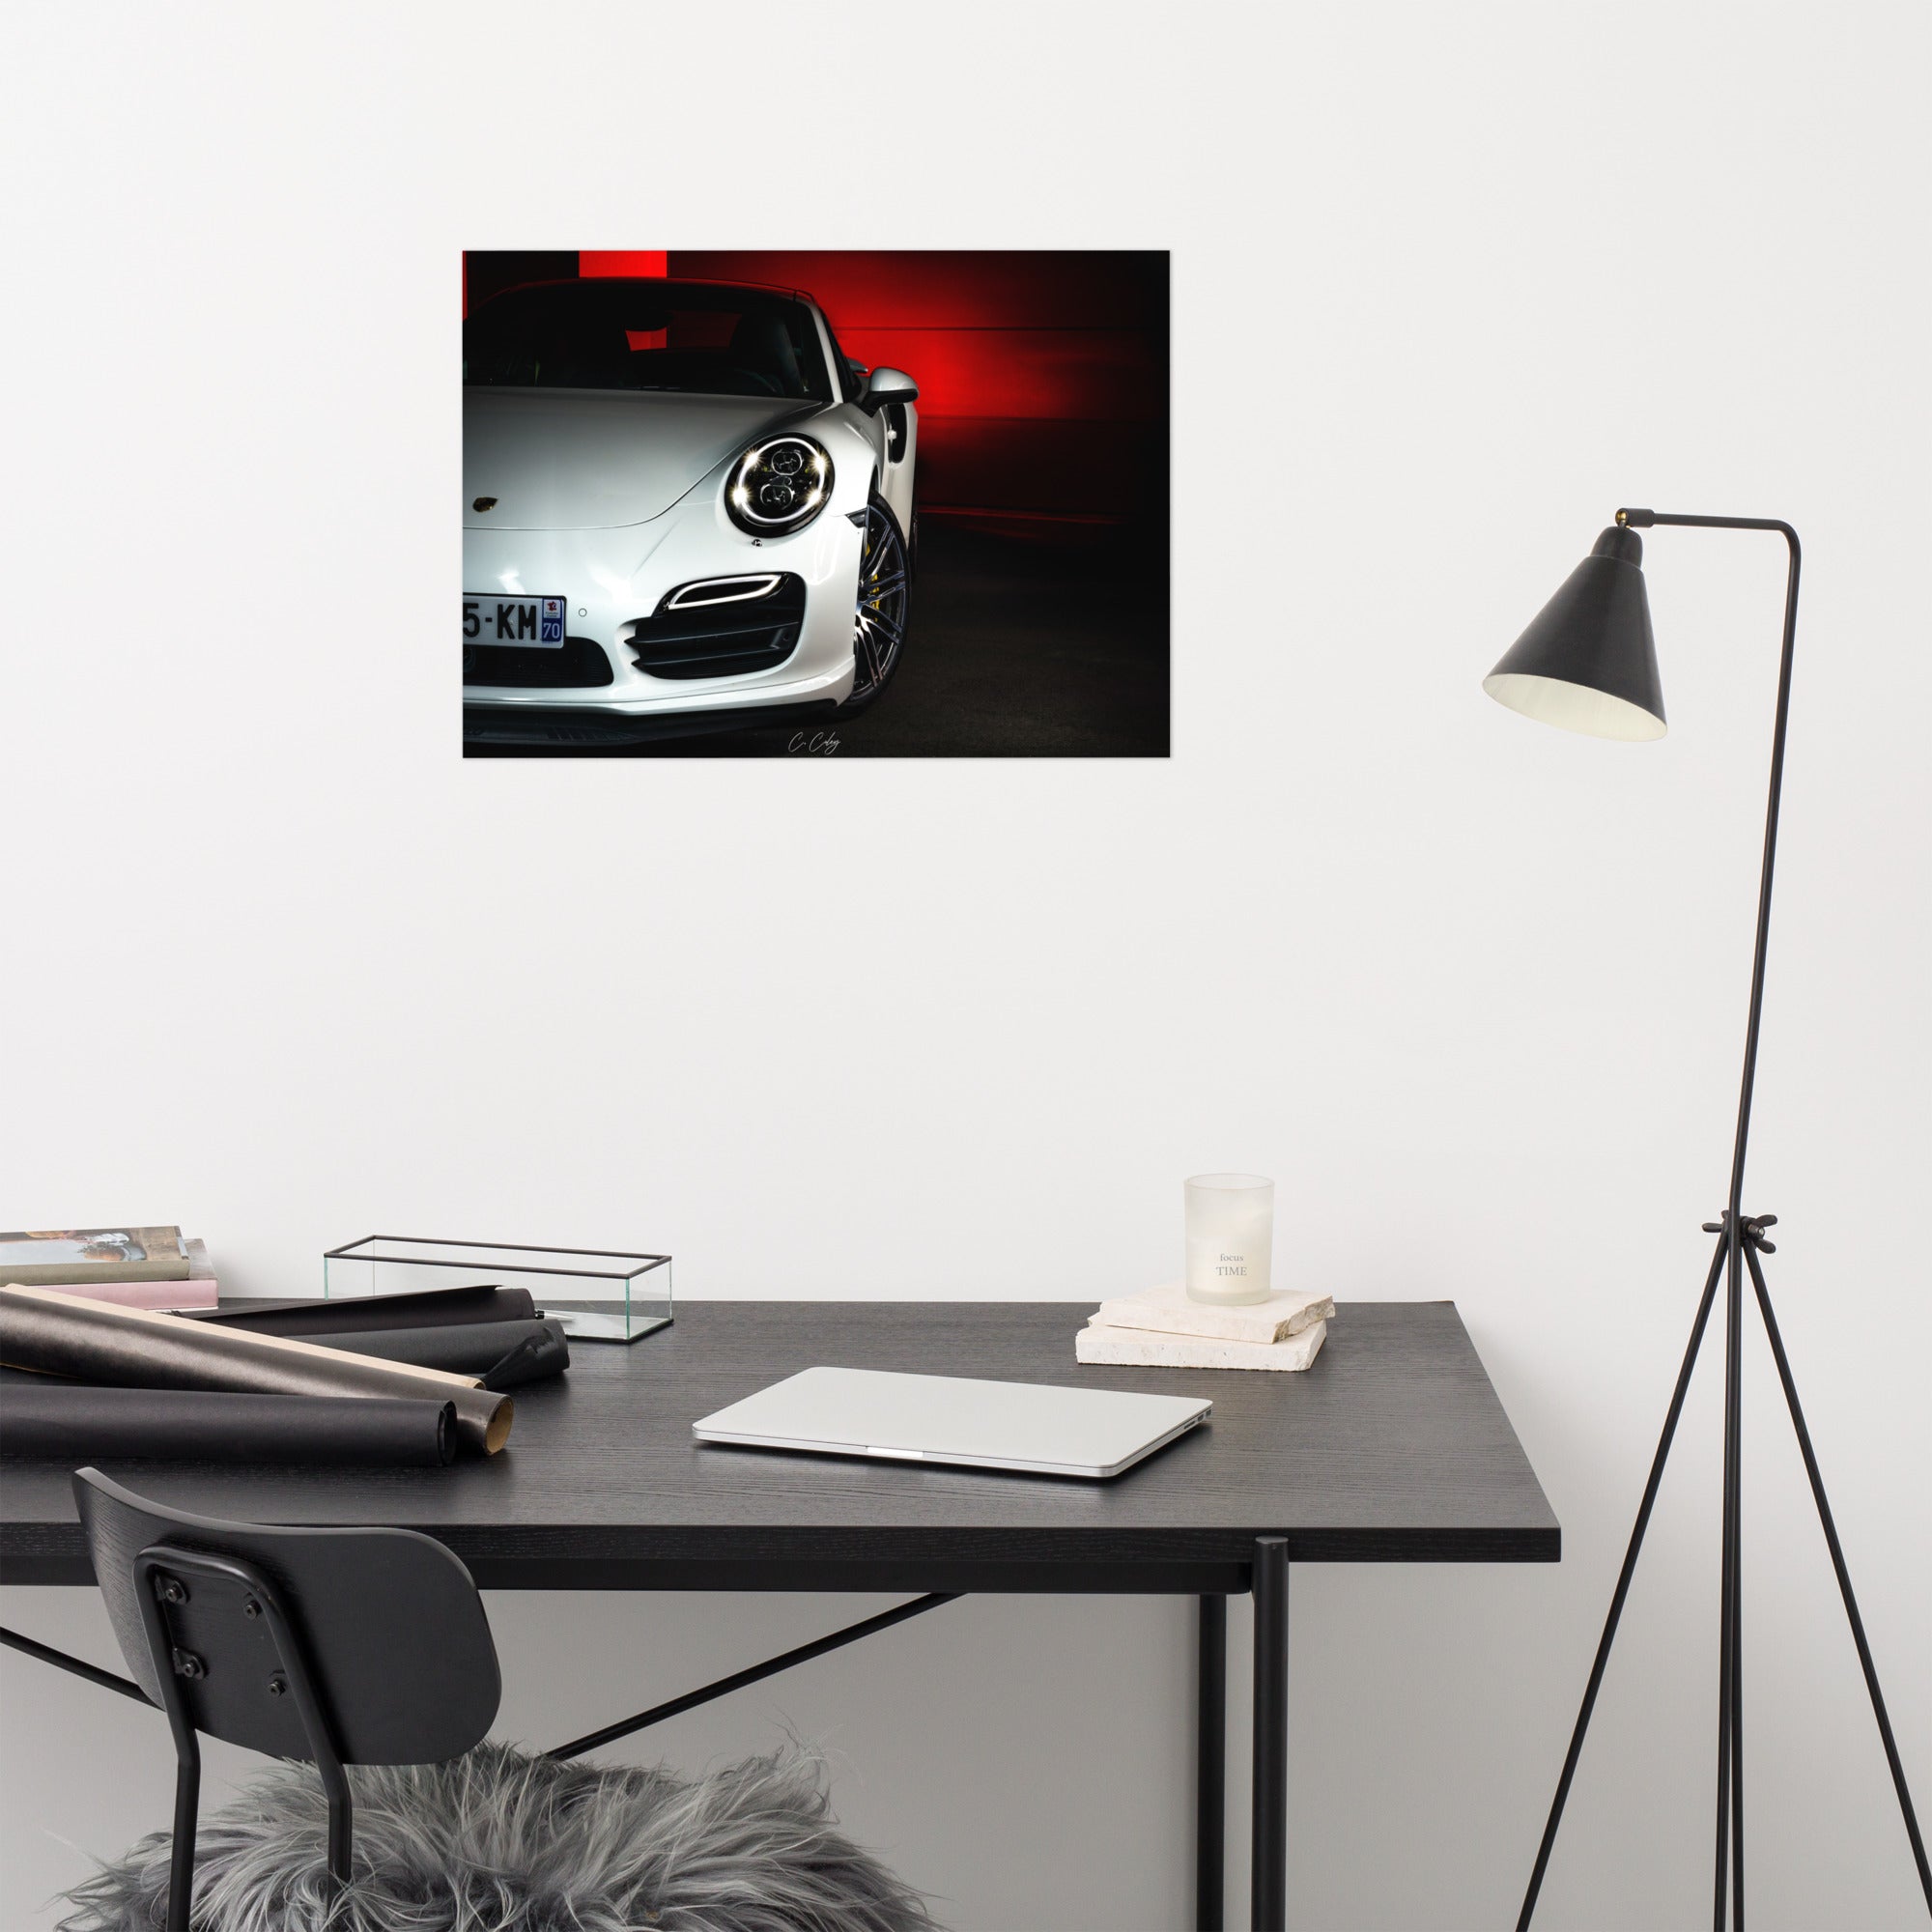 Affiche artistique 'Porsche 911 Turbo' par Charles Coley, mettant en valeur une puissante Porsche 911 Turbo avec un fond rouge et noir dynamique, alliant audace et sophistication dans une représentation visuelle qui ajoute une touche énergique et élégante à tous les espaces.